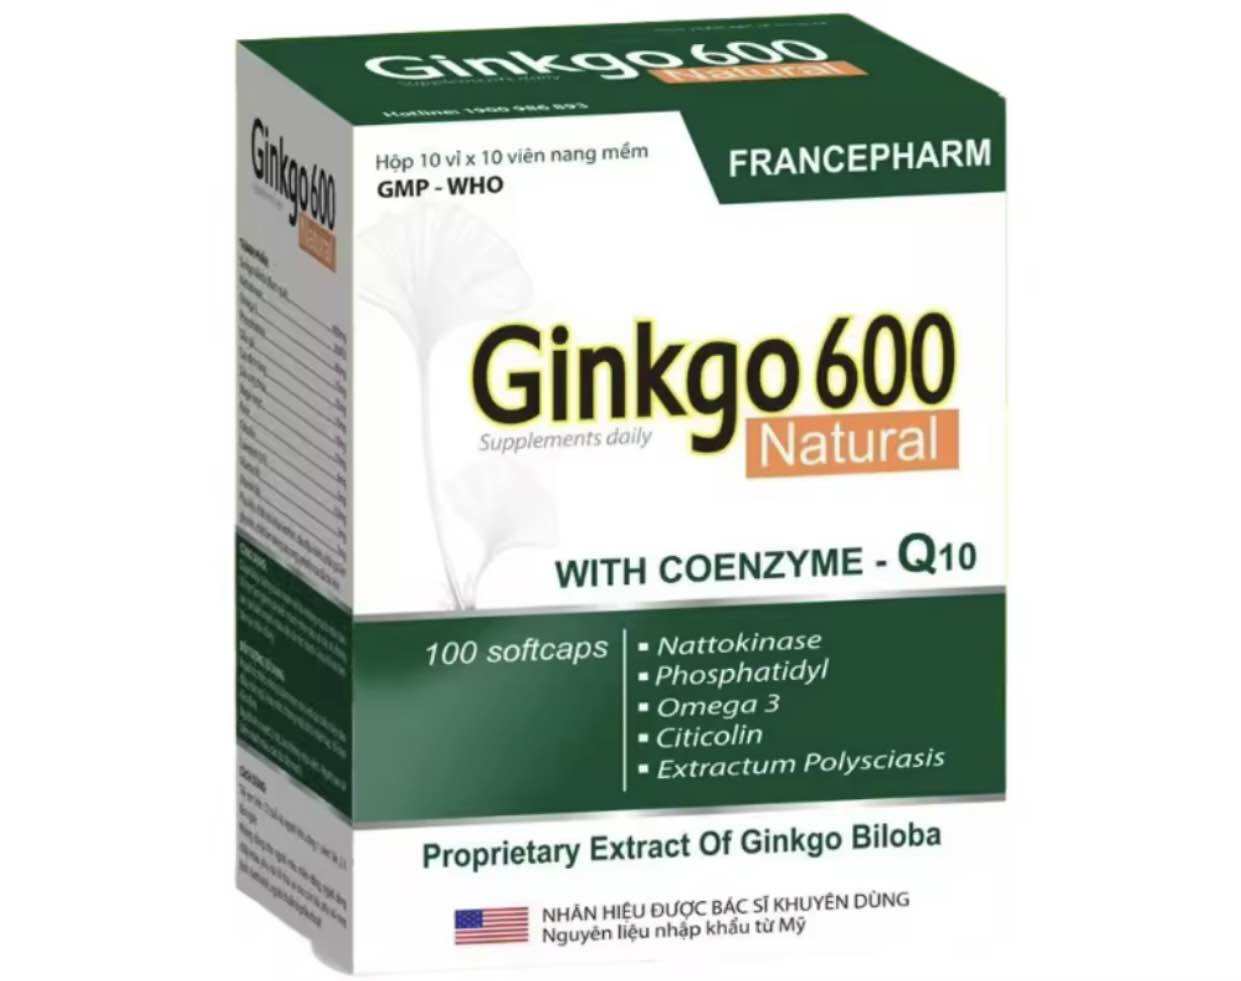 GINKGO 600 NATURAl